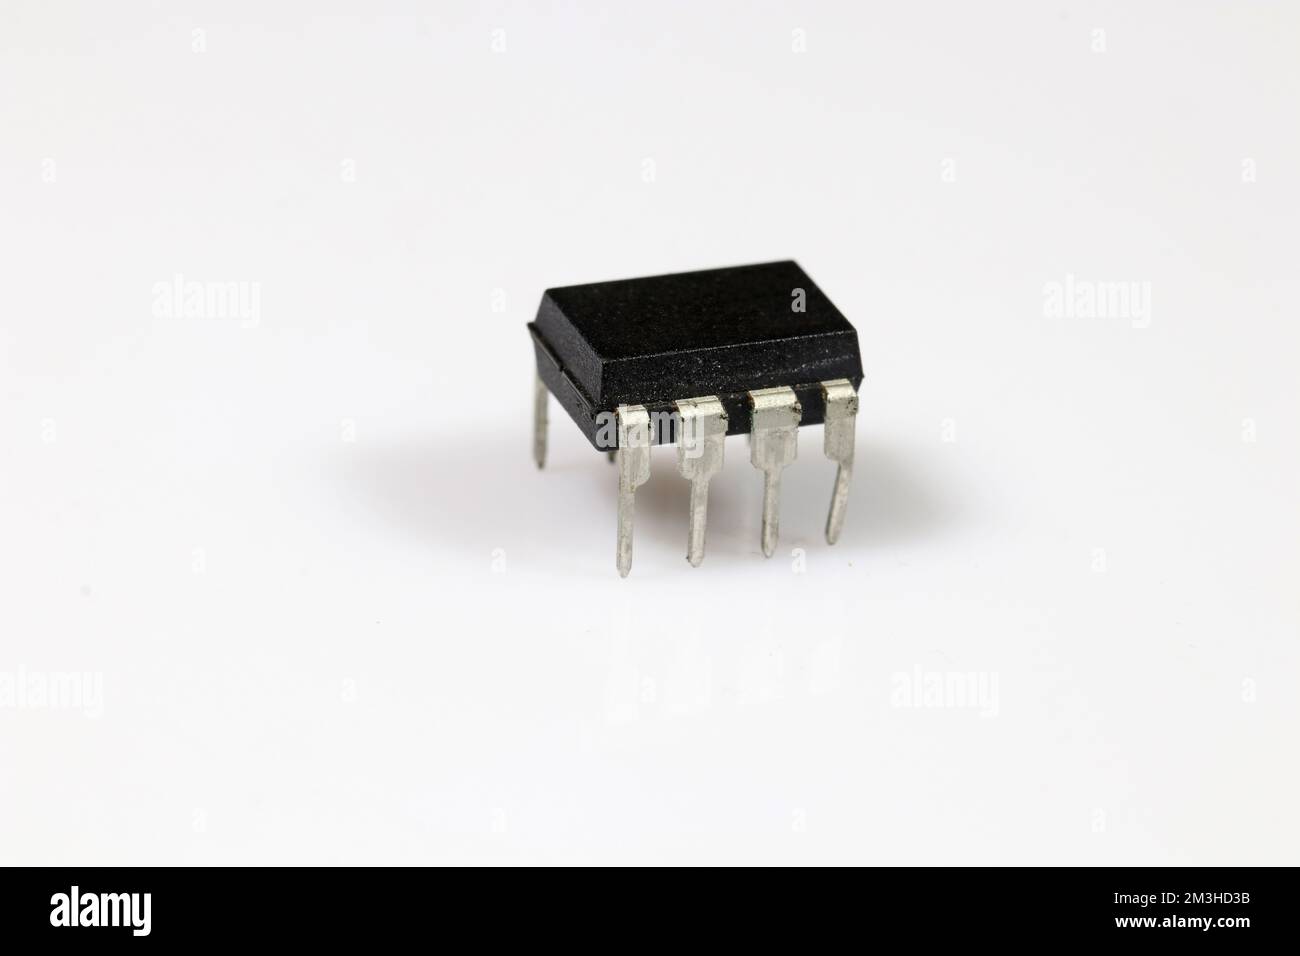 Mikrocontroller mit acht Stiften (Beinen) auf weißem Hintergrund. Elektronische Bauteile. Stockfoto